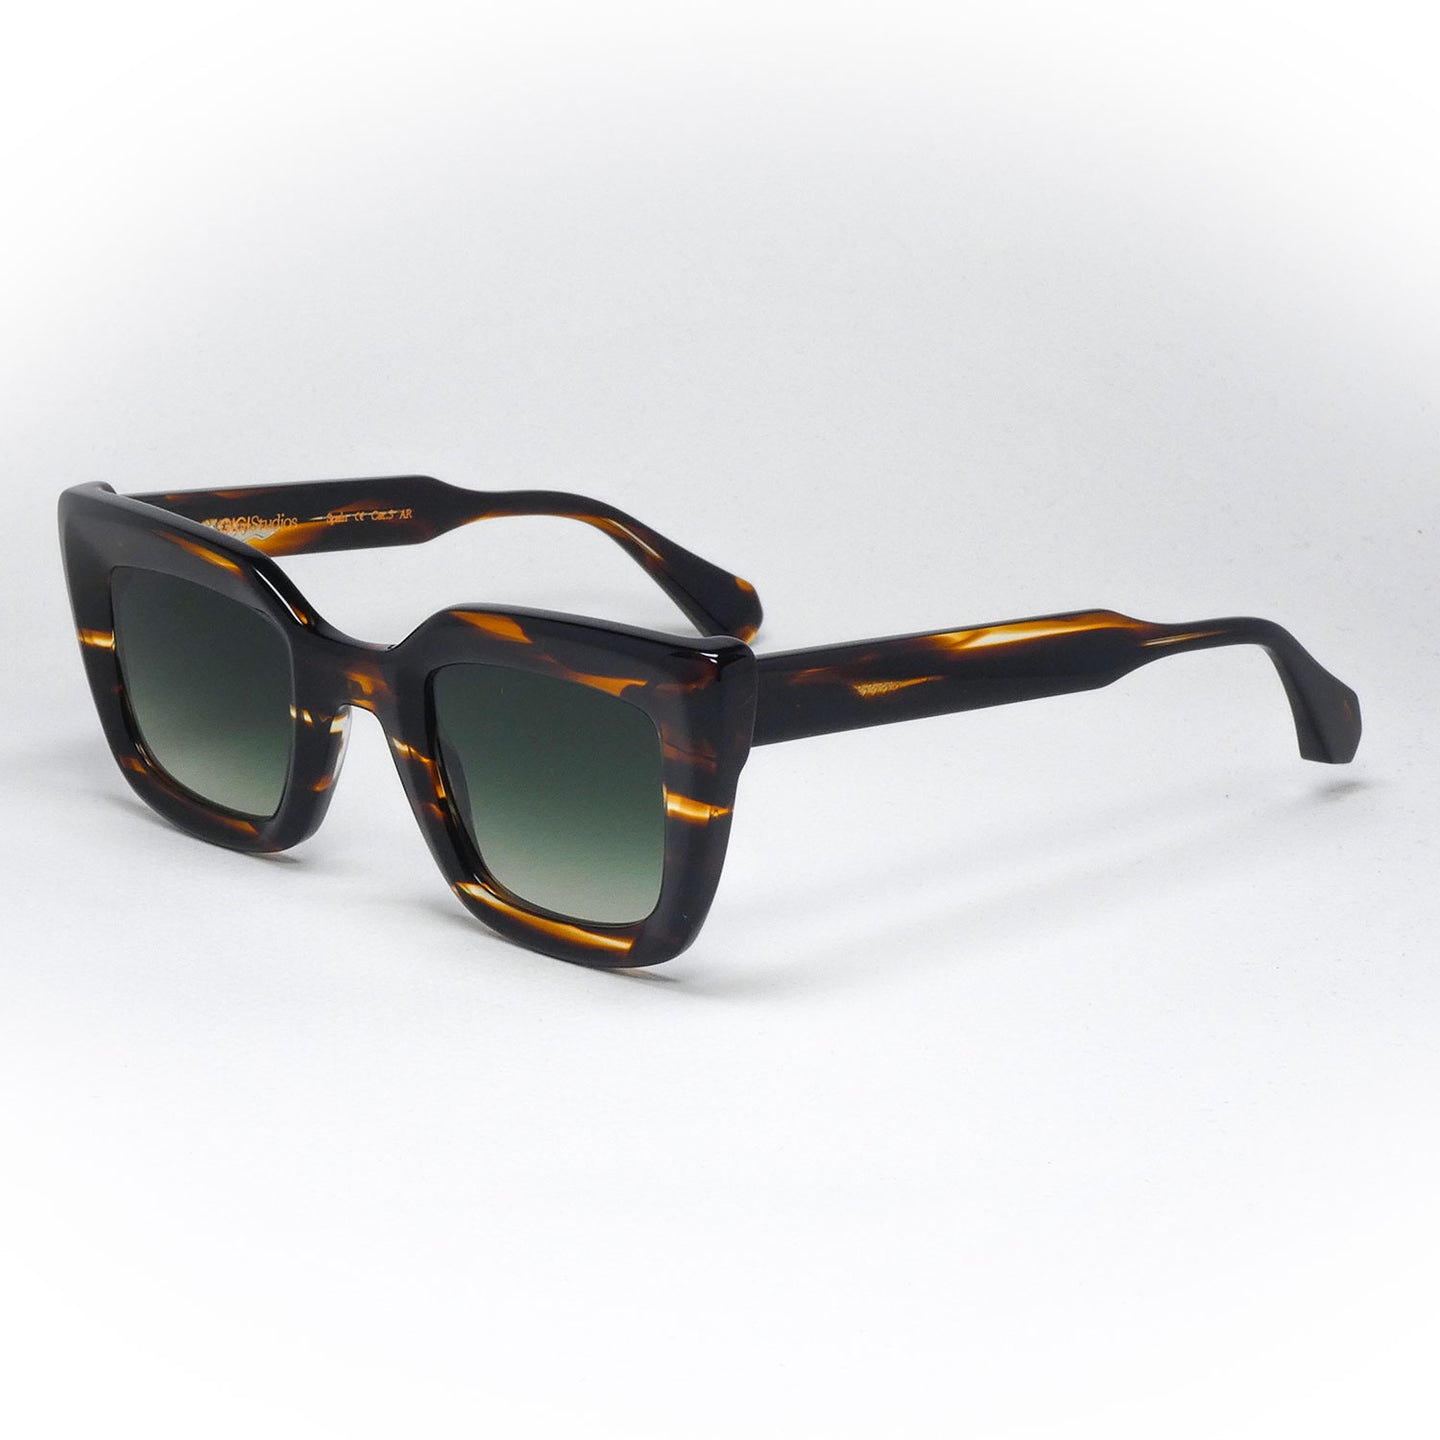 sunglasses gigistudios 6420 color 2 angled view